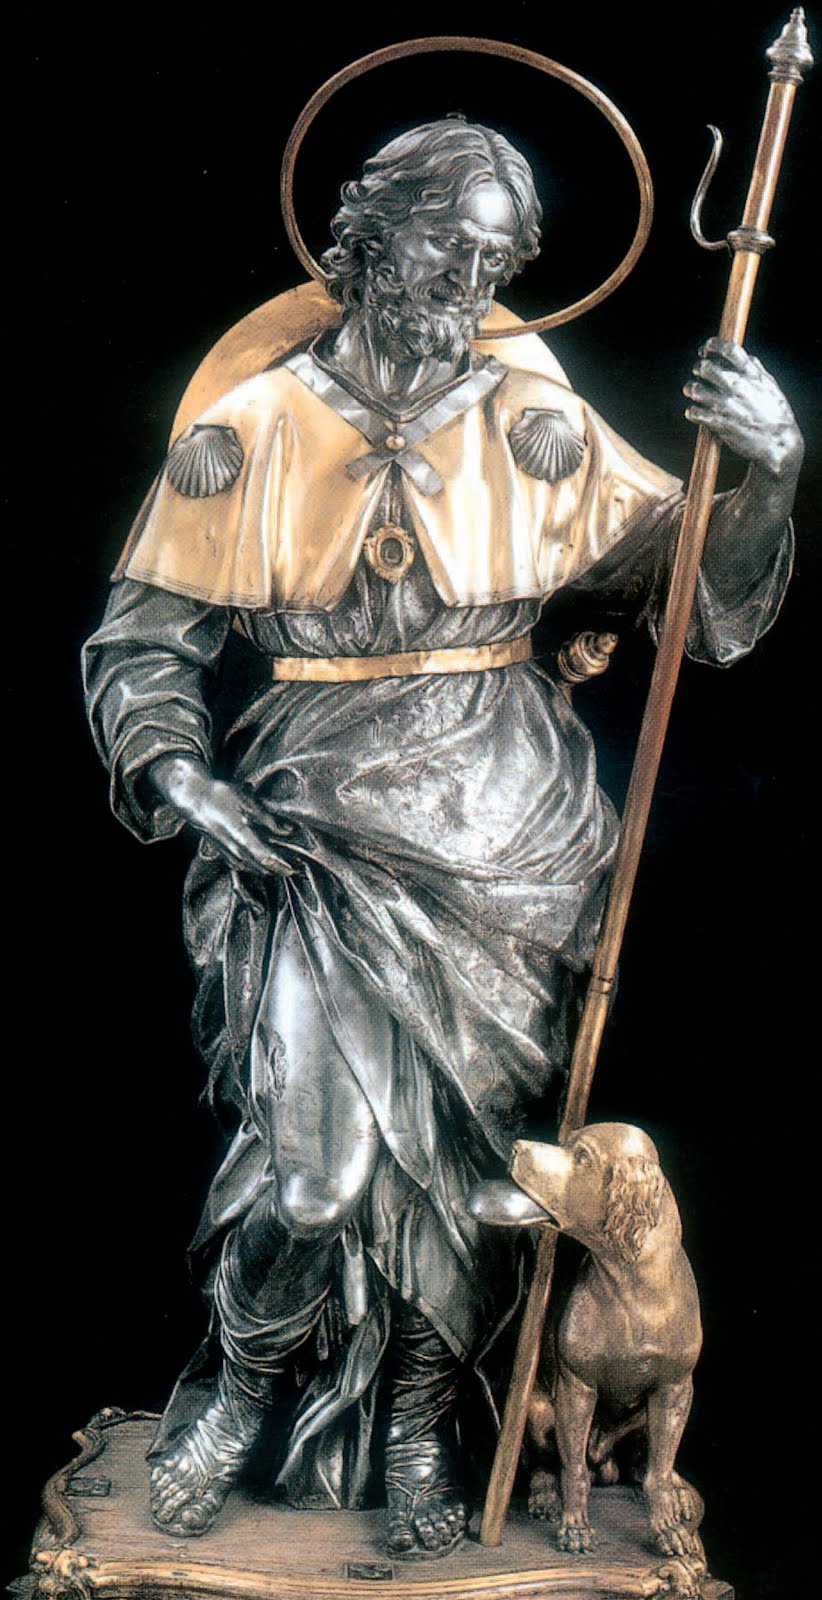 Ruvo festeggia San Rocco, patrono minore dal XVI secolo